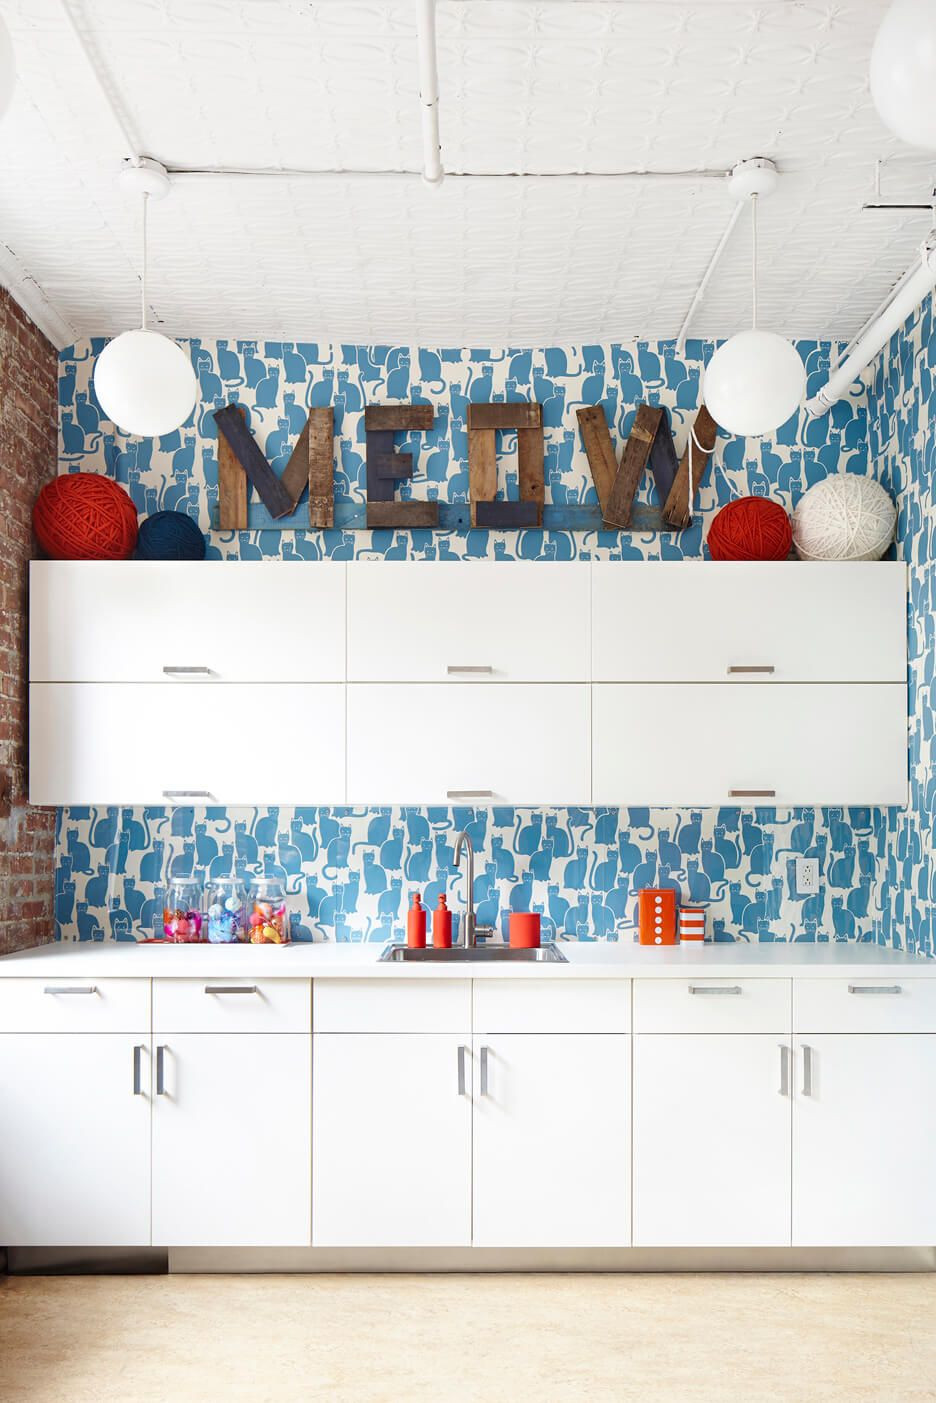 Ý tưởng dành cho người yêu thích DIY: Sử dụng giấy dán tường cho một phần tường bếp, vị trí trên nóc tủ sẽ thể hiện chủ đề trang trí ( mèo, mùa xuân, cây cối,...).